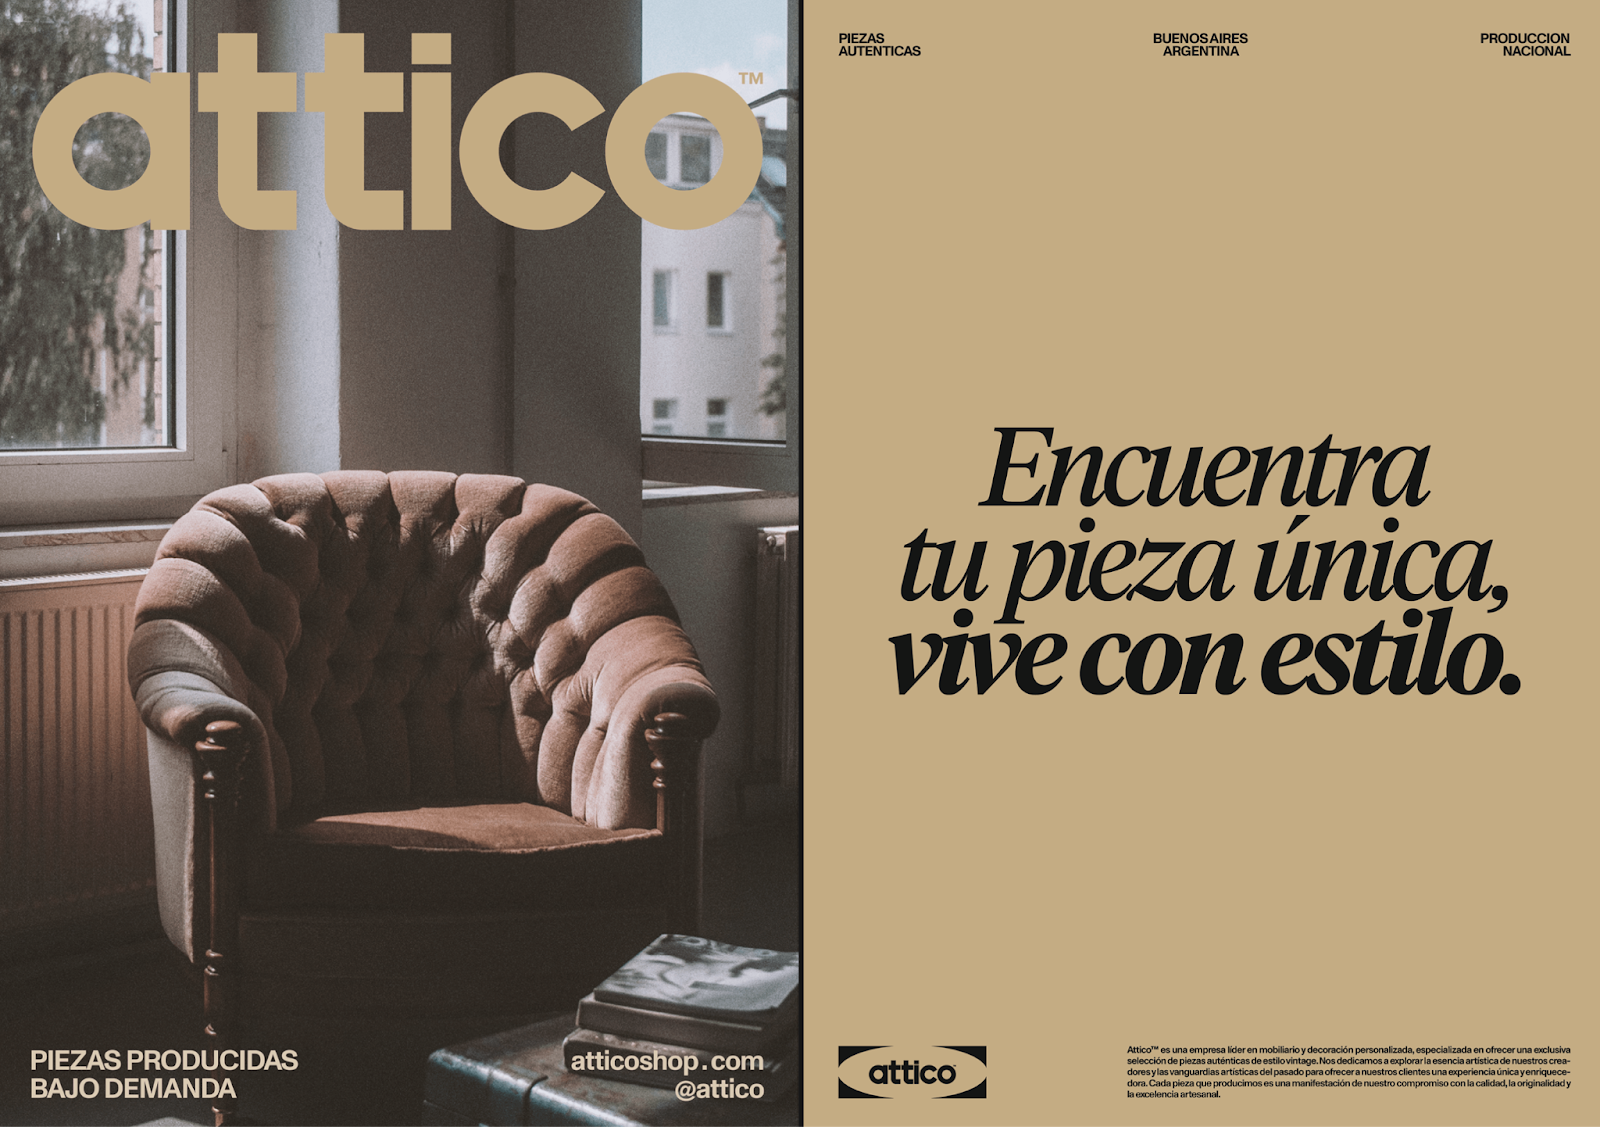 Attico家具复古风格品牌视觉设计